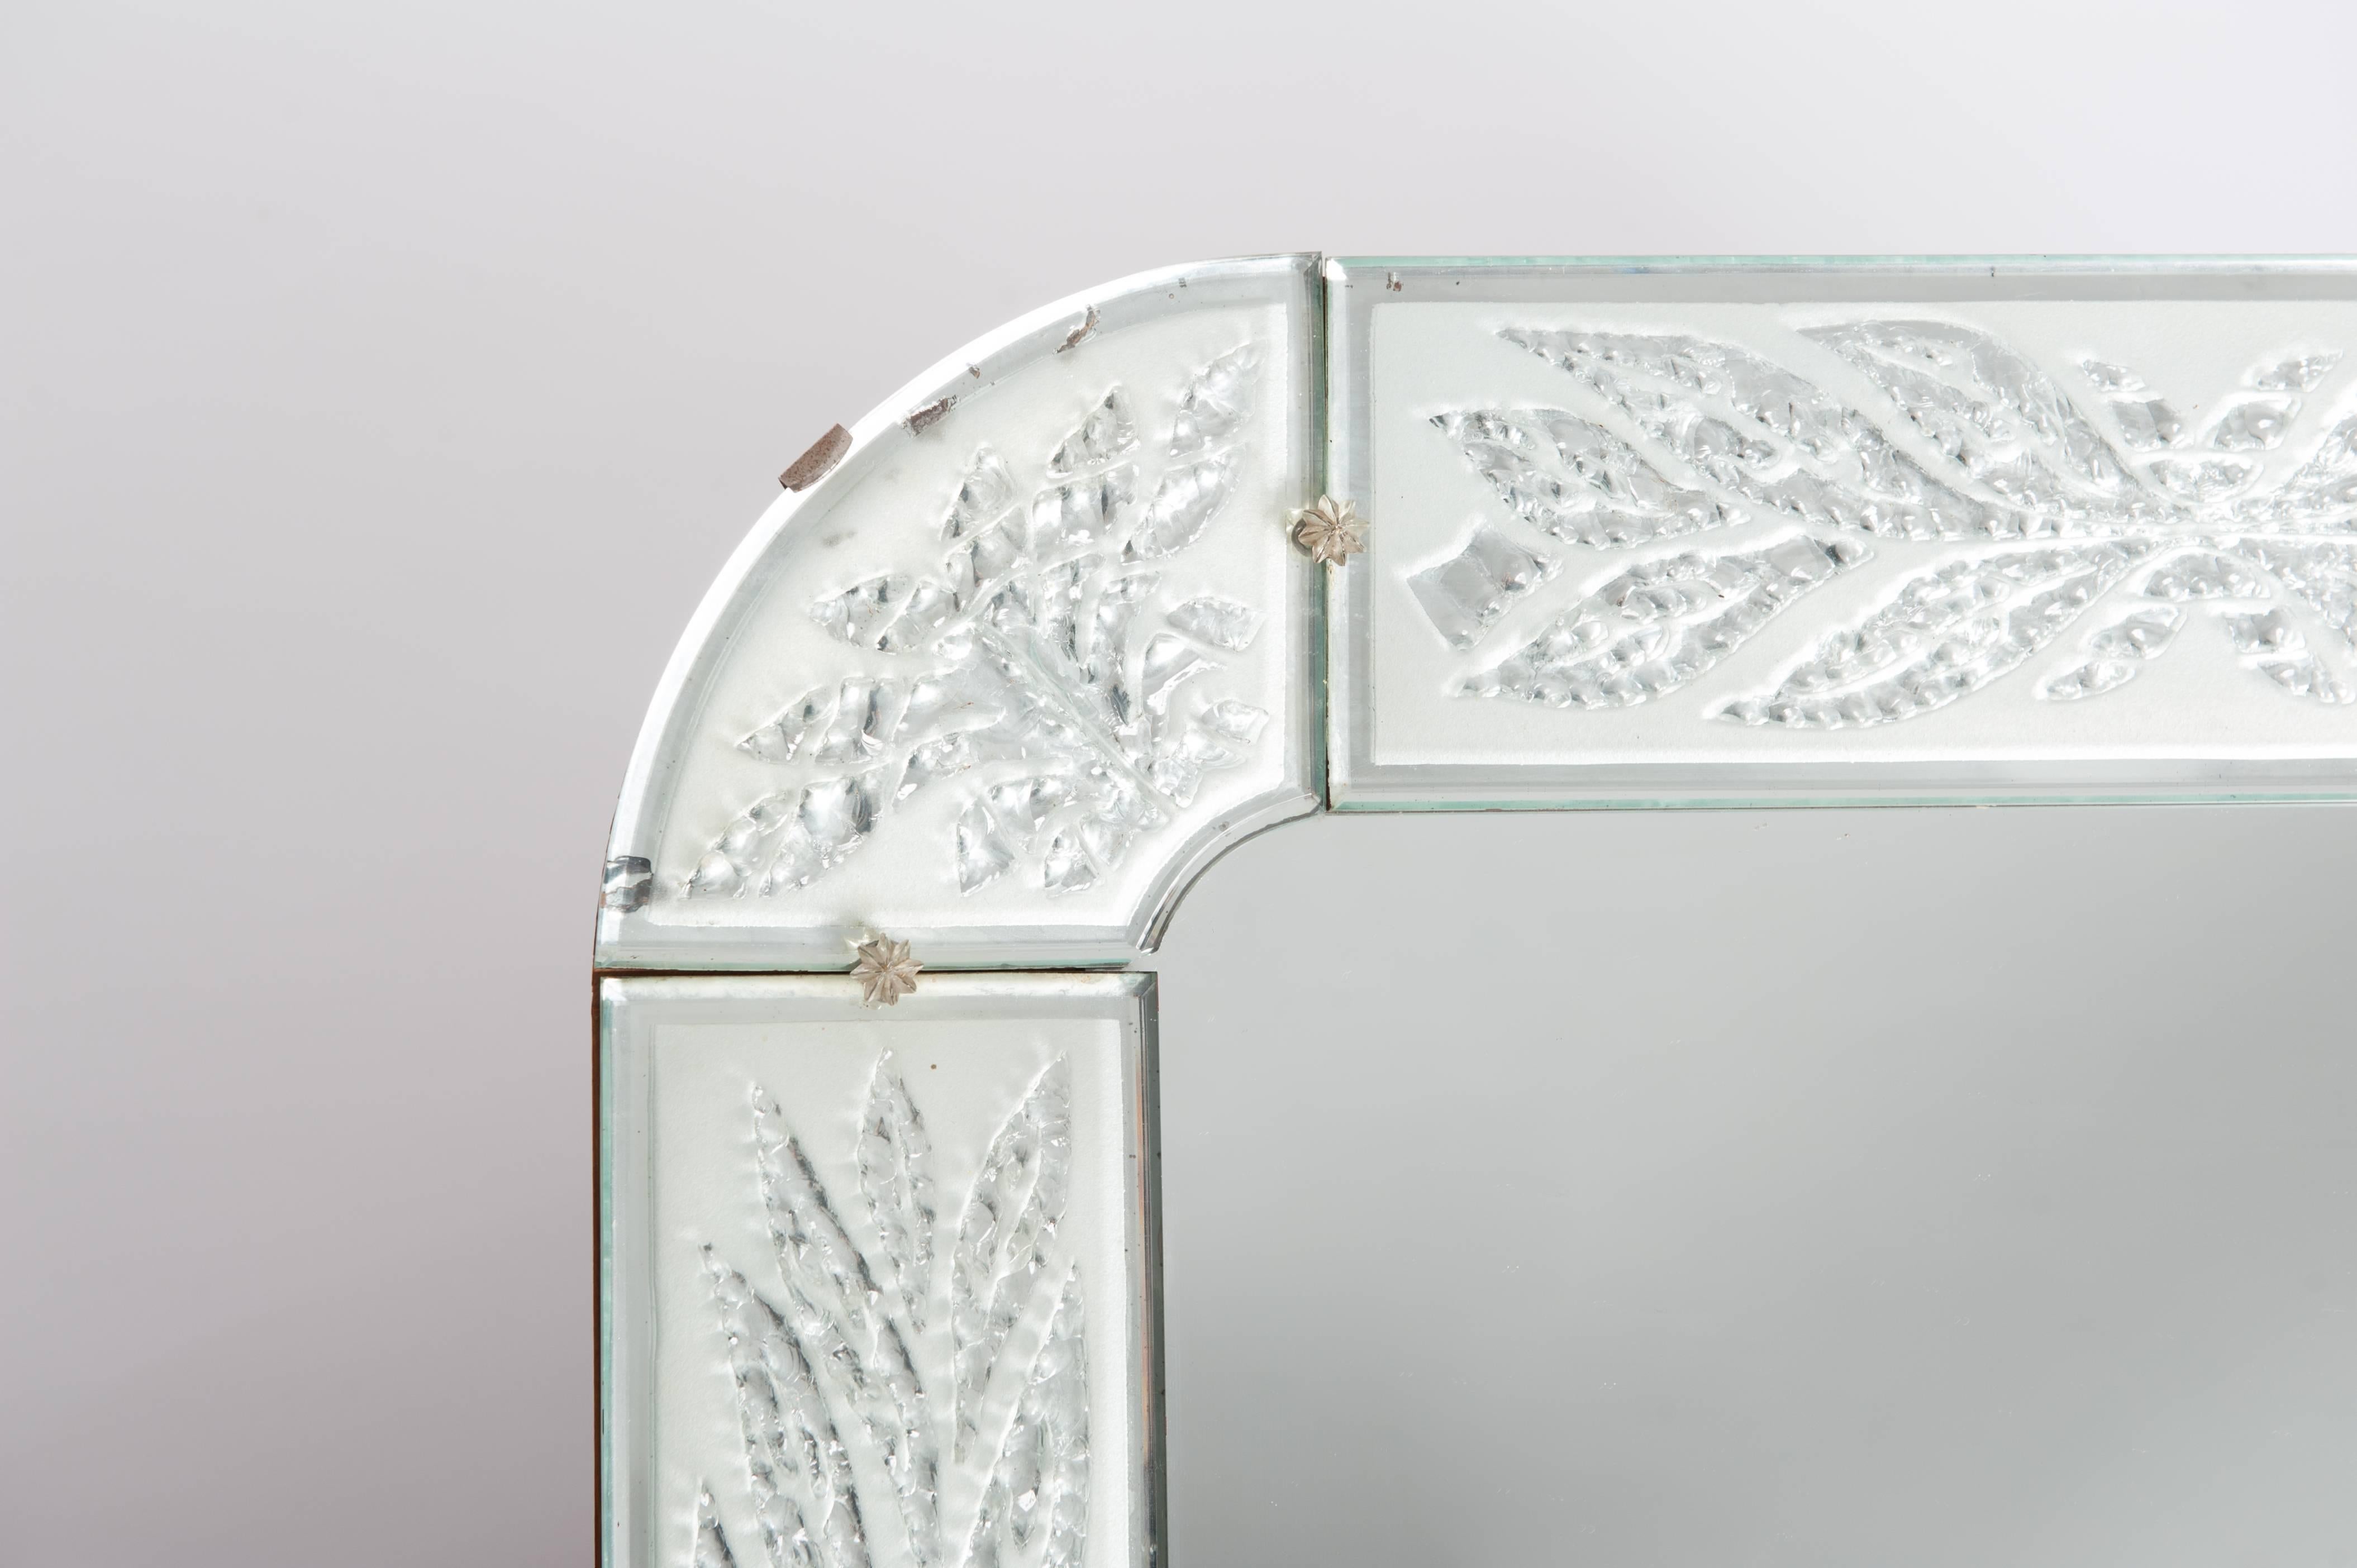 Besonderer skandinavischer Art Déco Spiegel, die Gravur des Rahmens sieht aus wie
gefrorene Blätter und die Kanten jedes einzelnen Stücks weisen winzige Abschrägungen auf.
Original Glas und Holzrückwand.